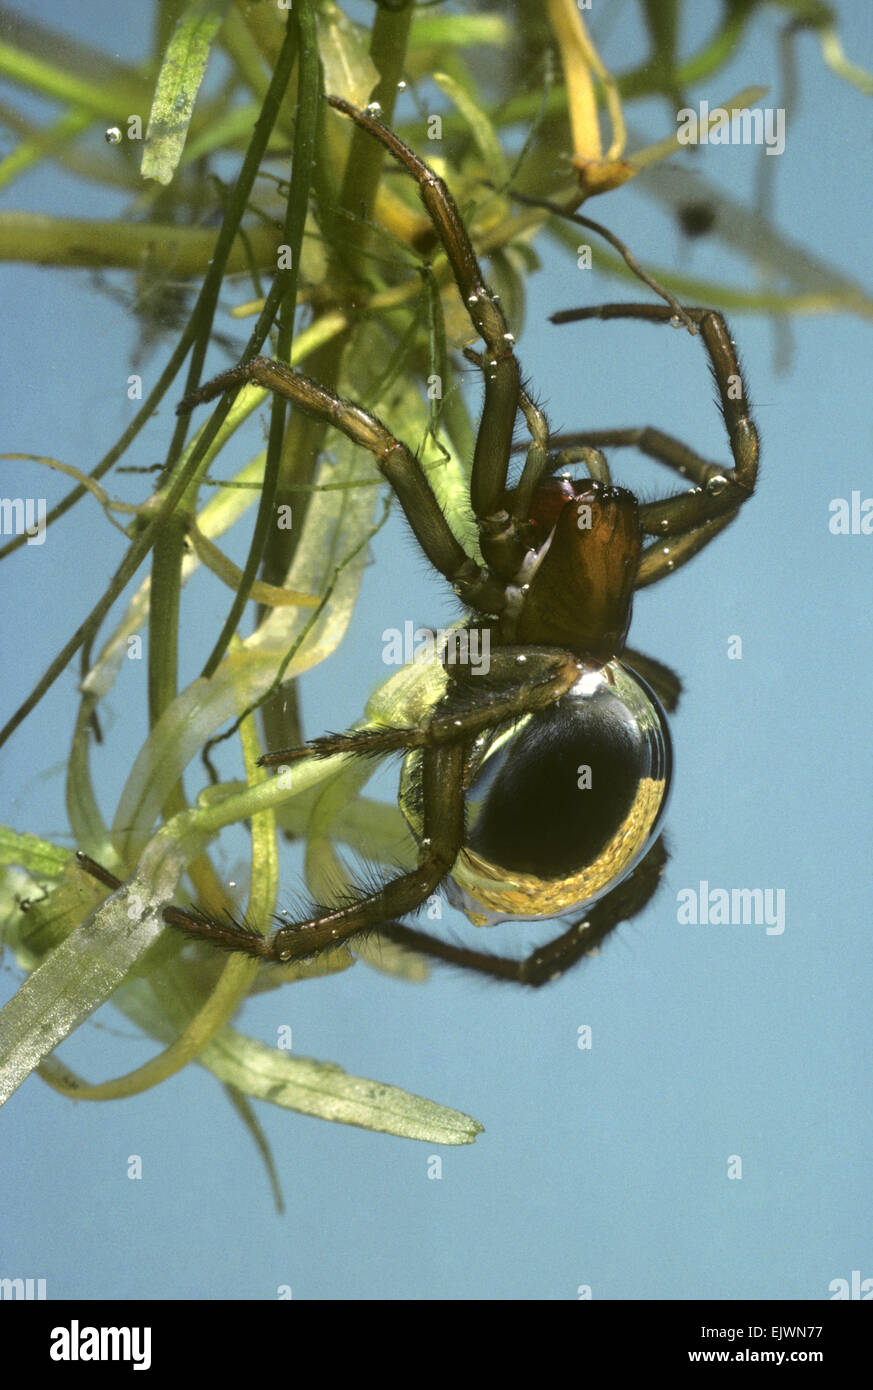 Argyroneta aquatica - araignée d'eau Banque D'Images